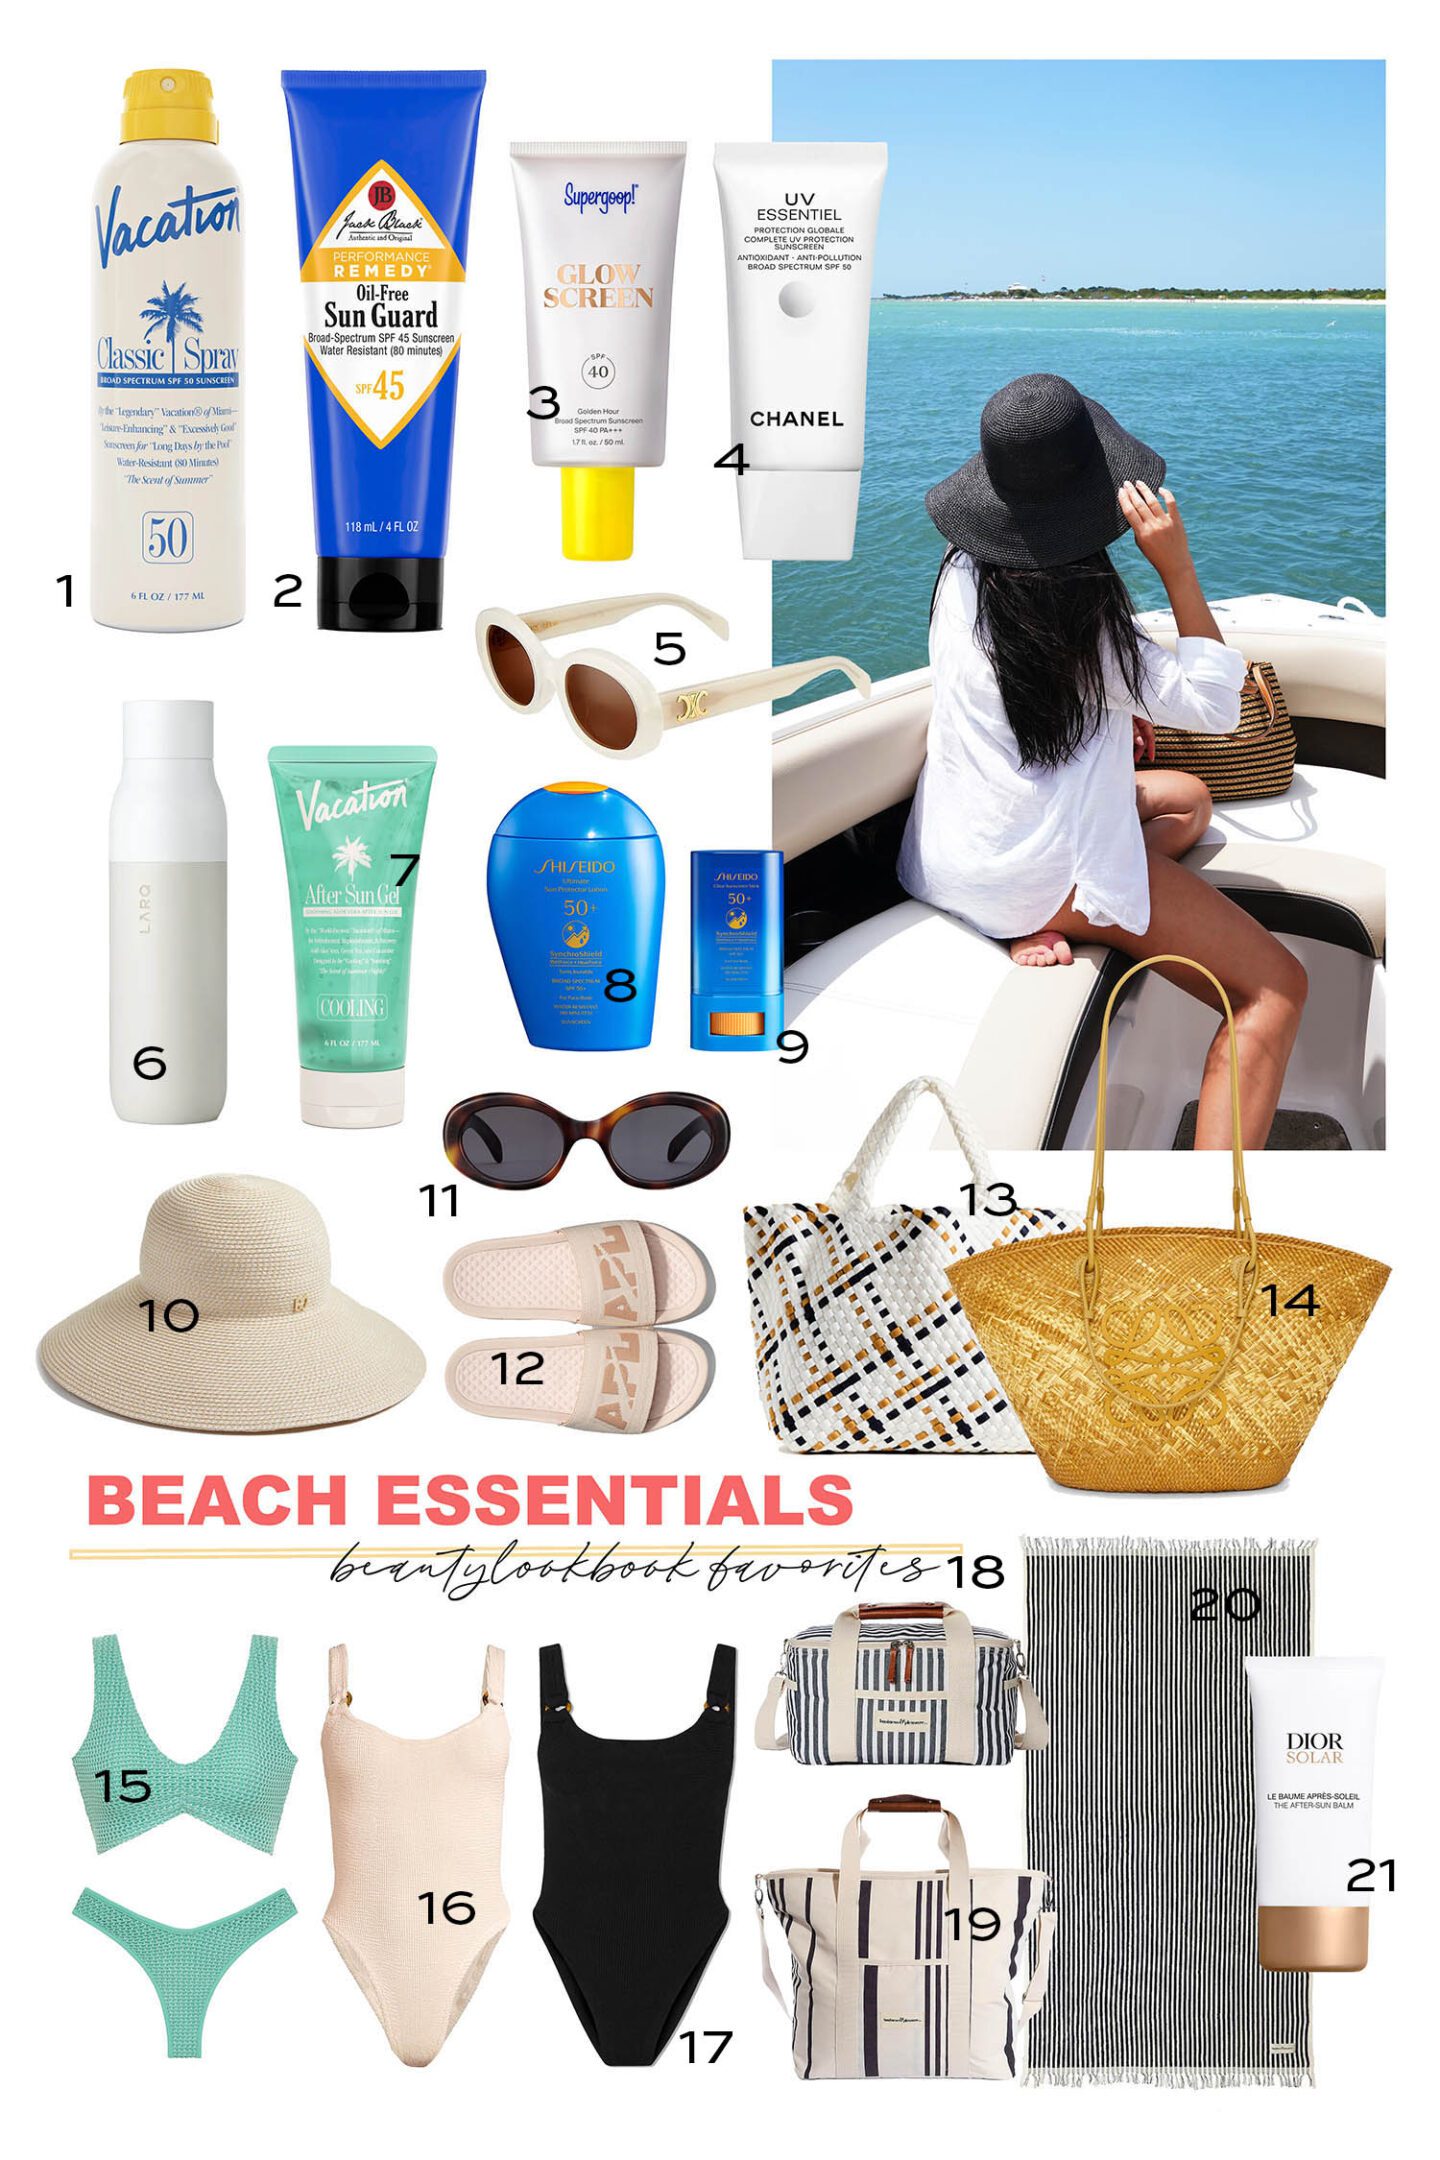 Summer Beach Essentials